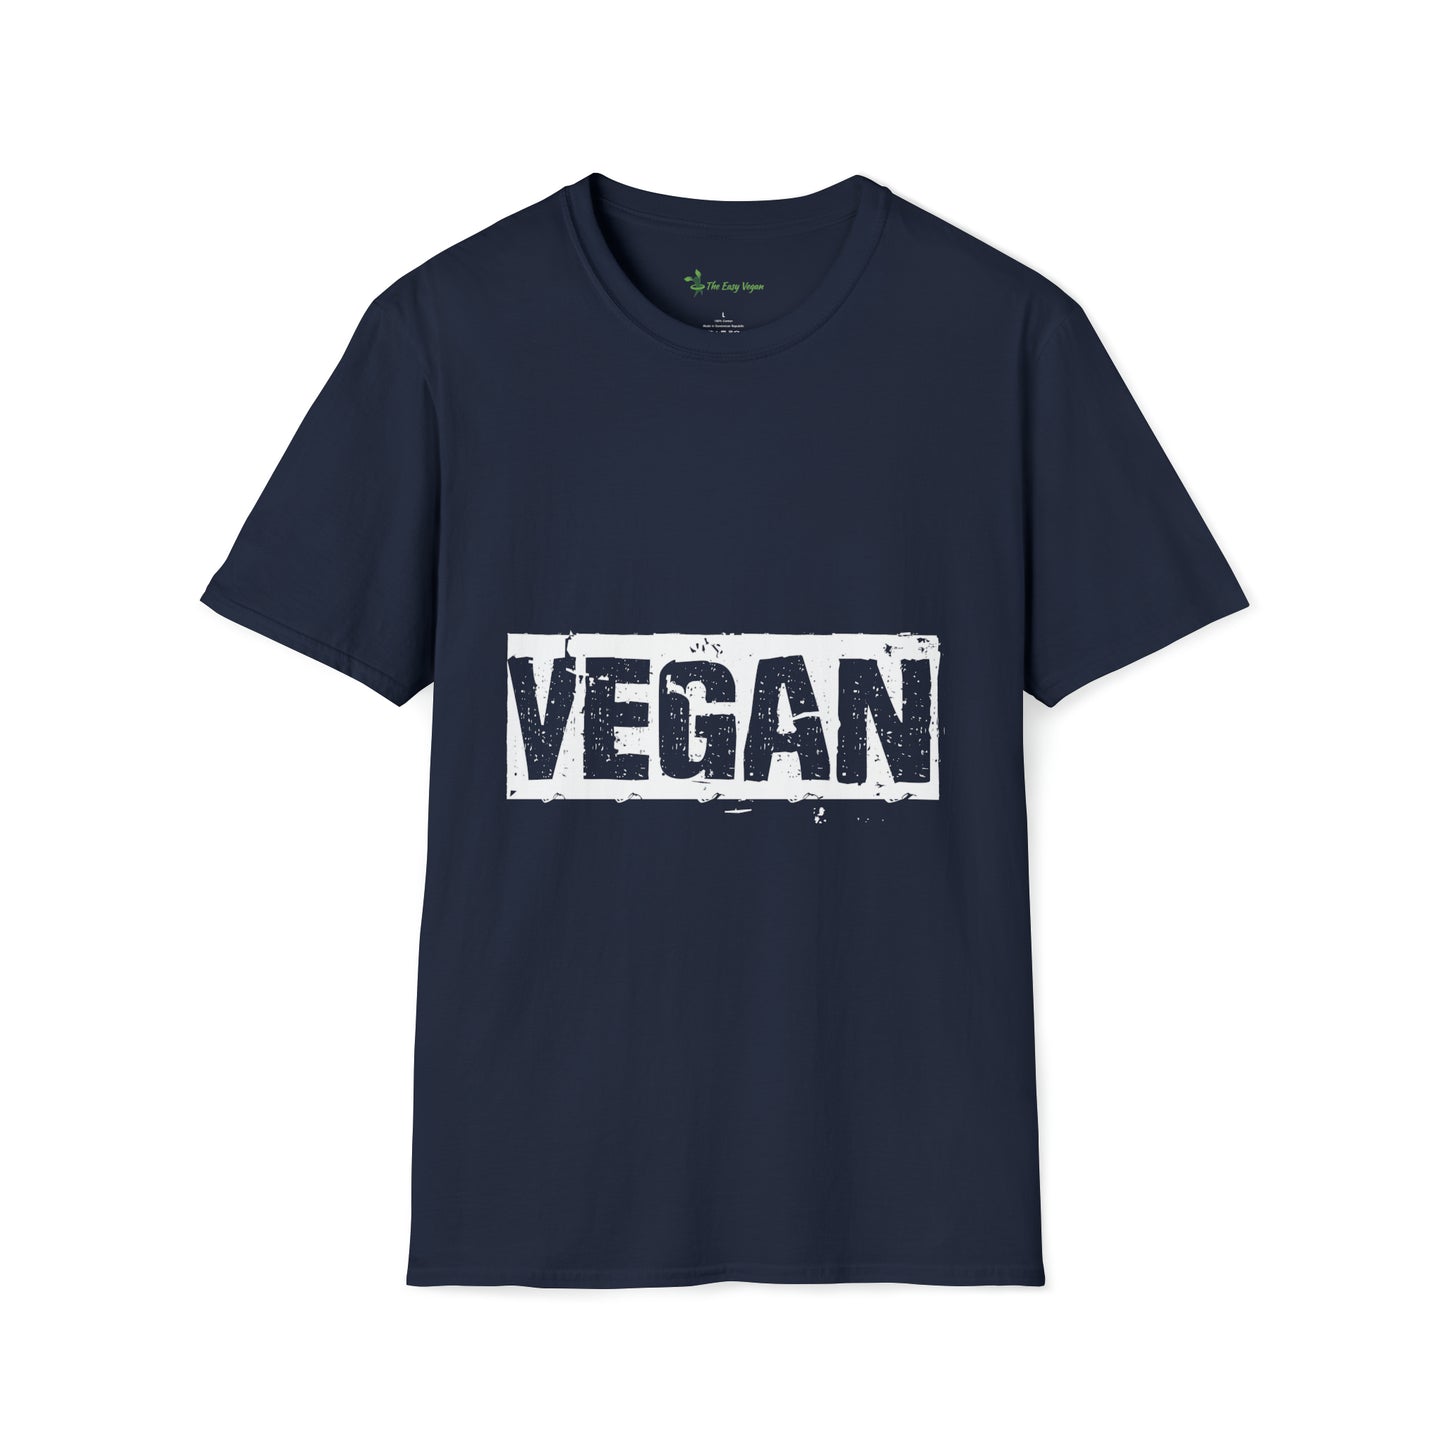 Vegan Text T-shirt